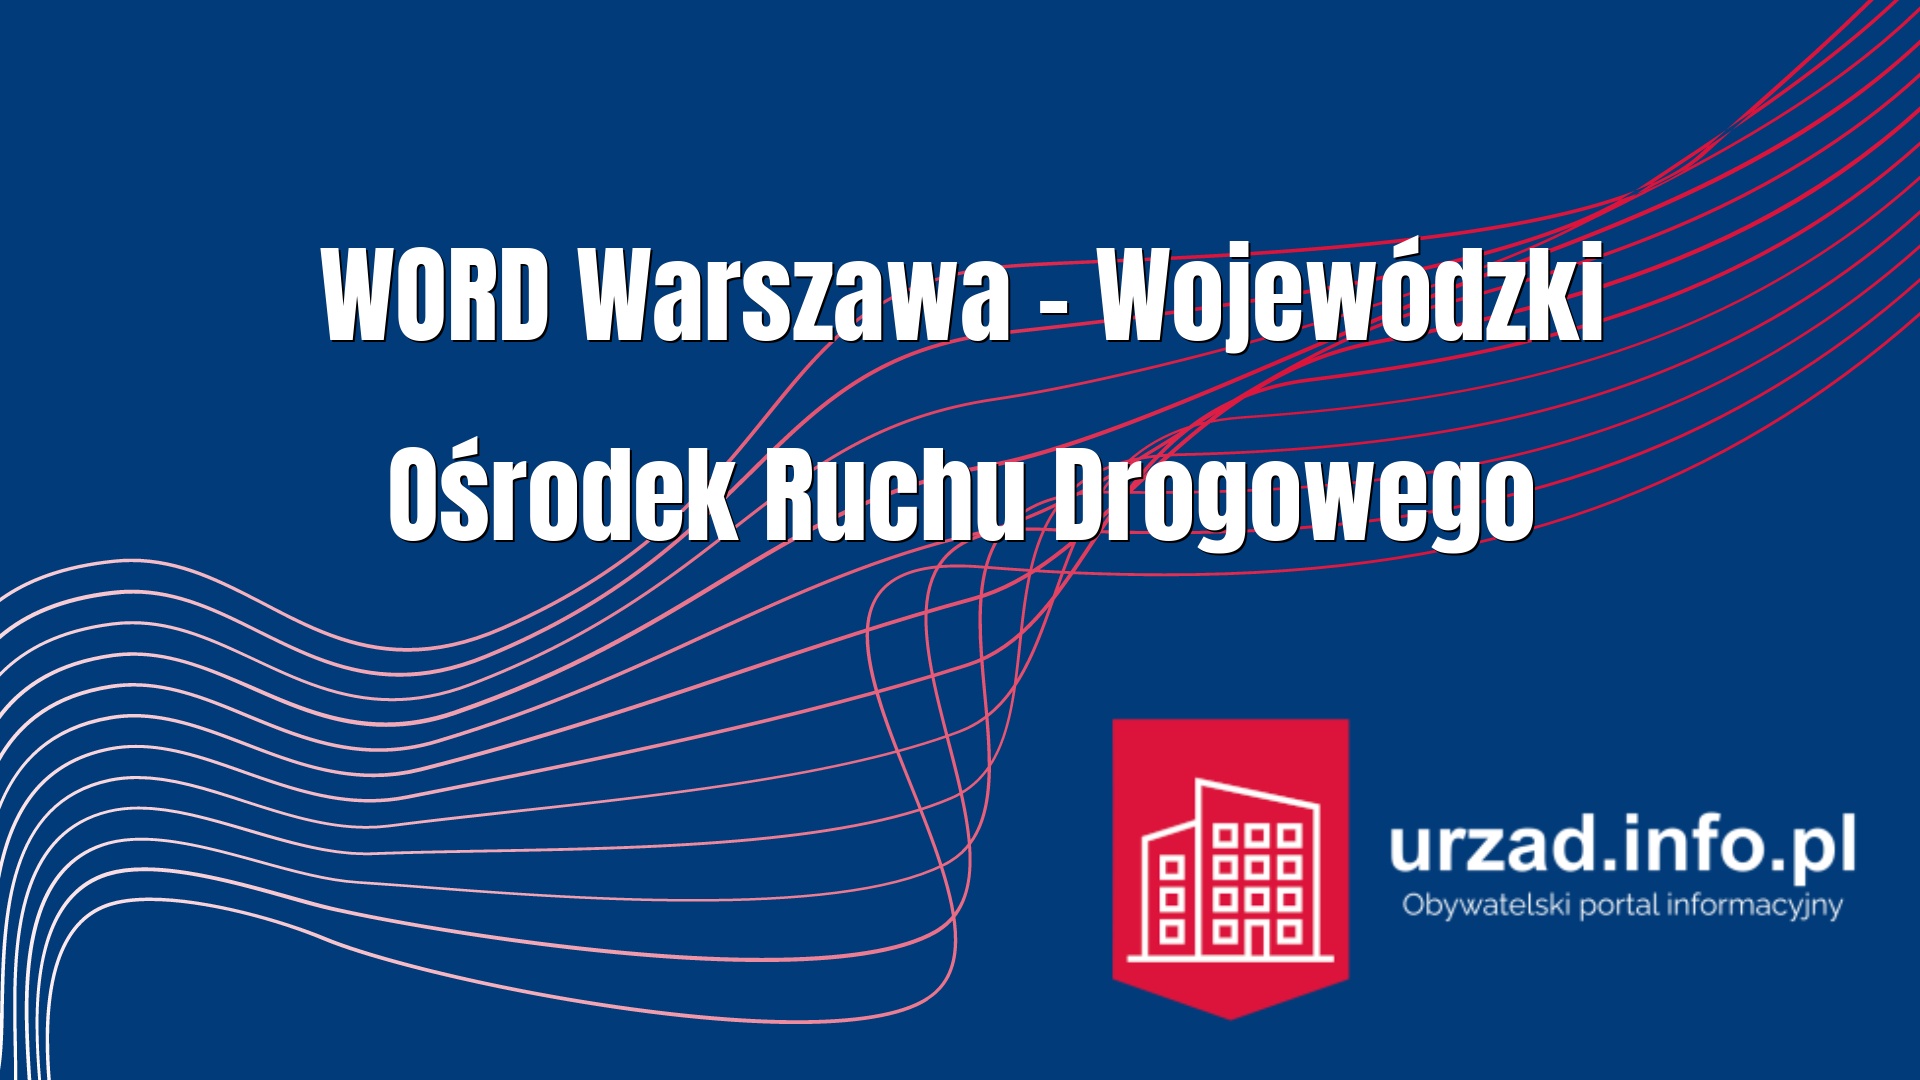 Wojewódzki Ośrodek Ruchu Drogowego w Warszawie